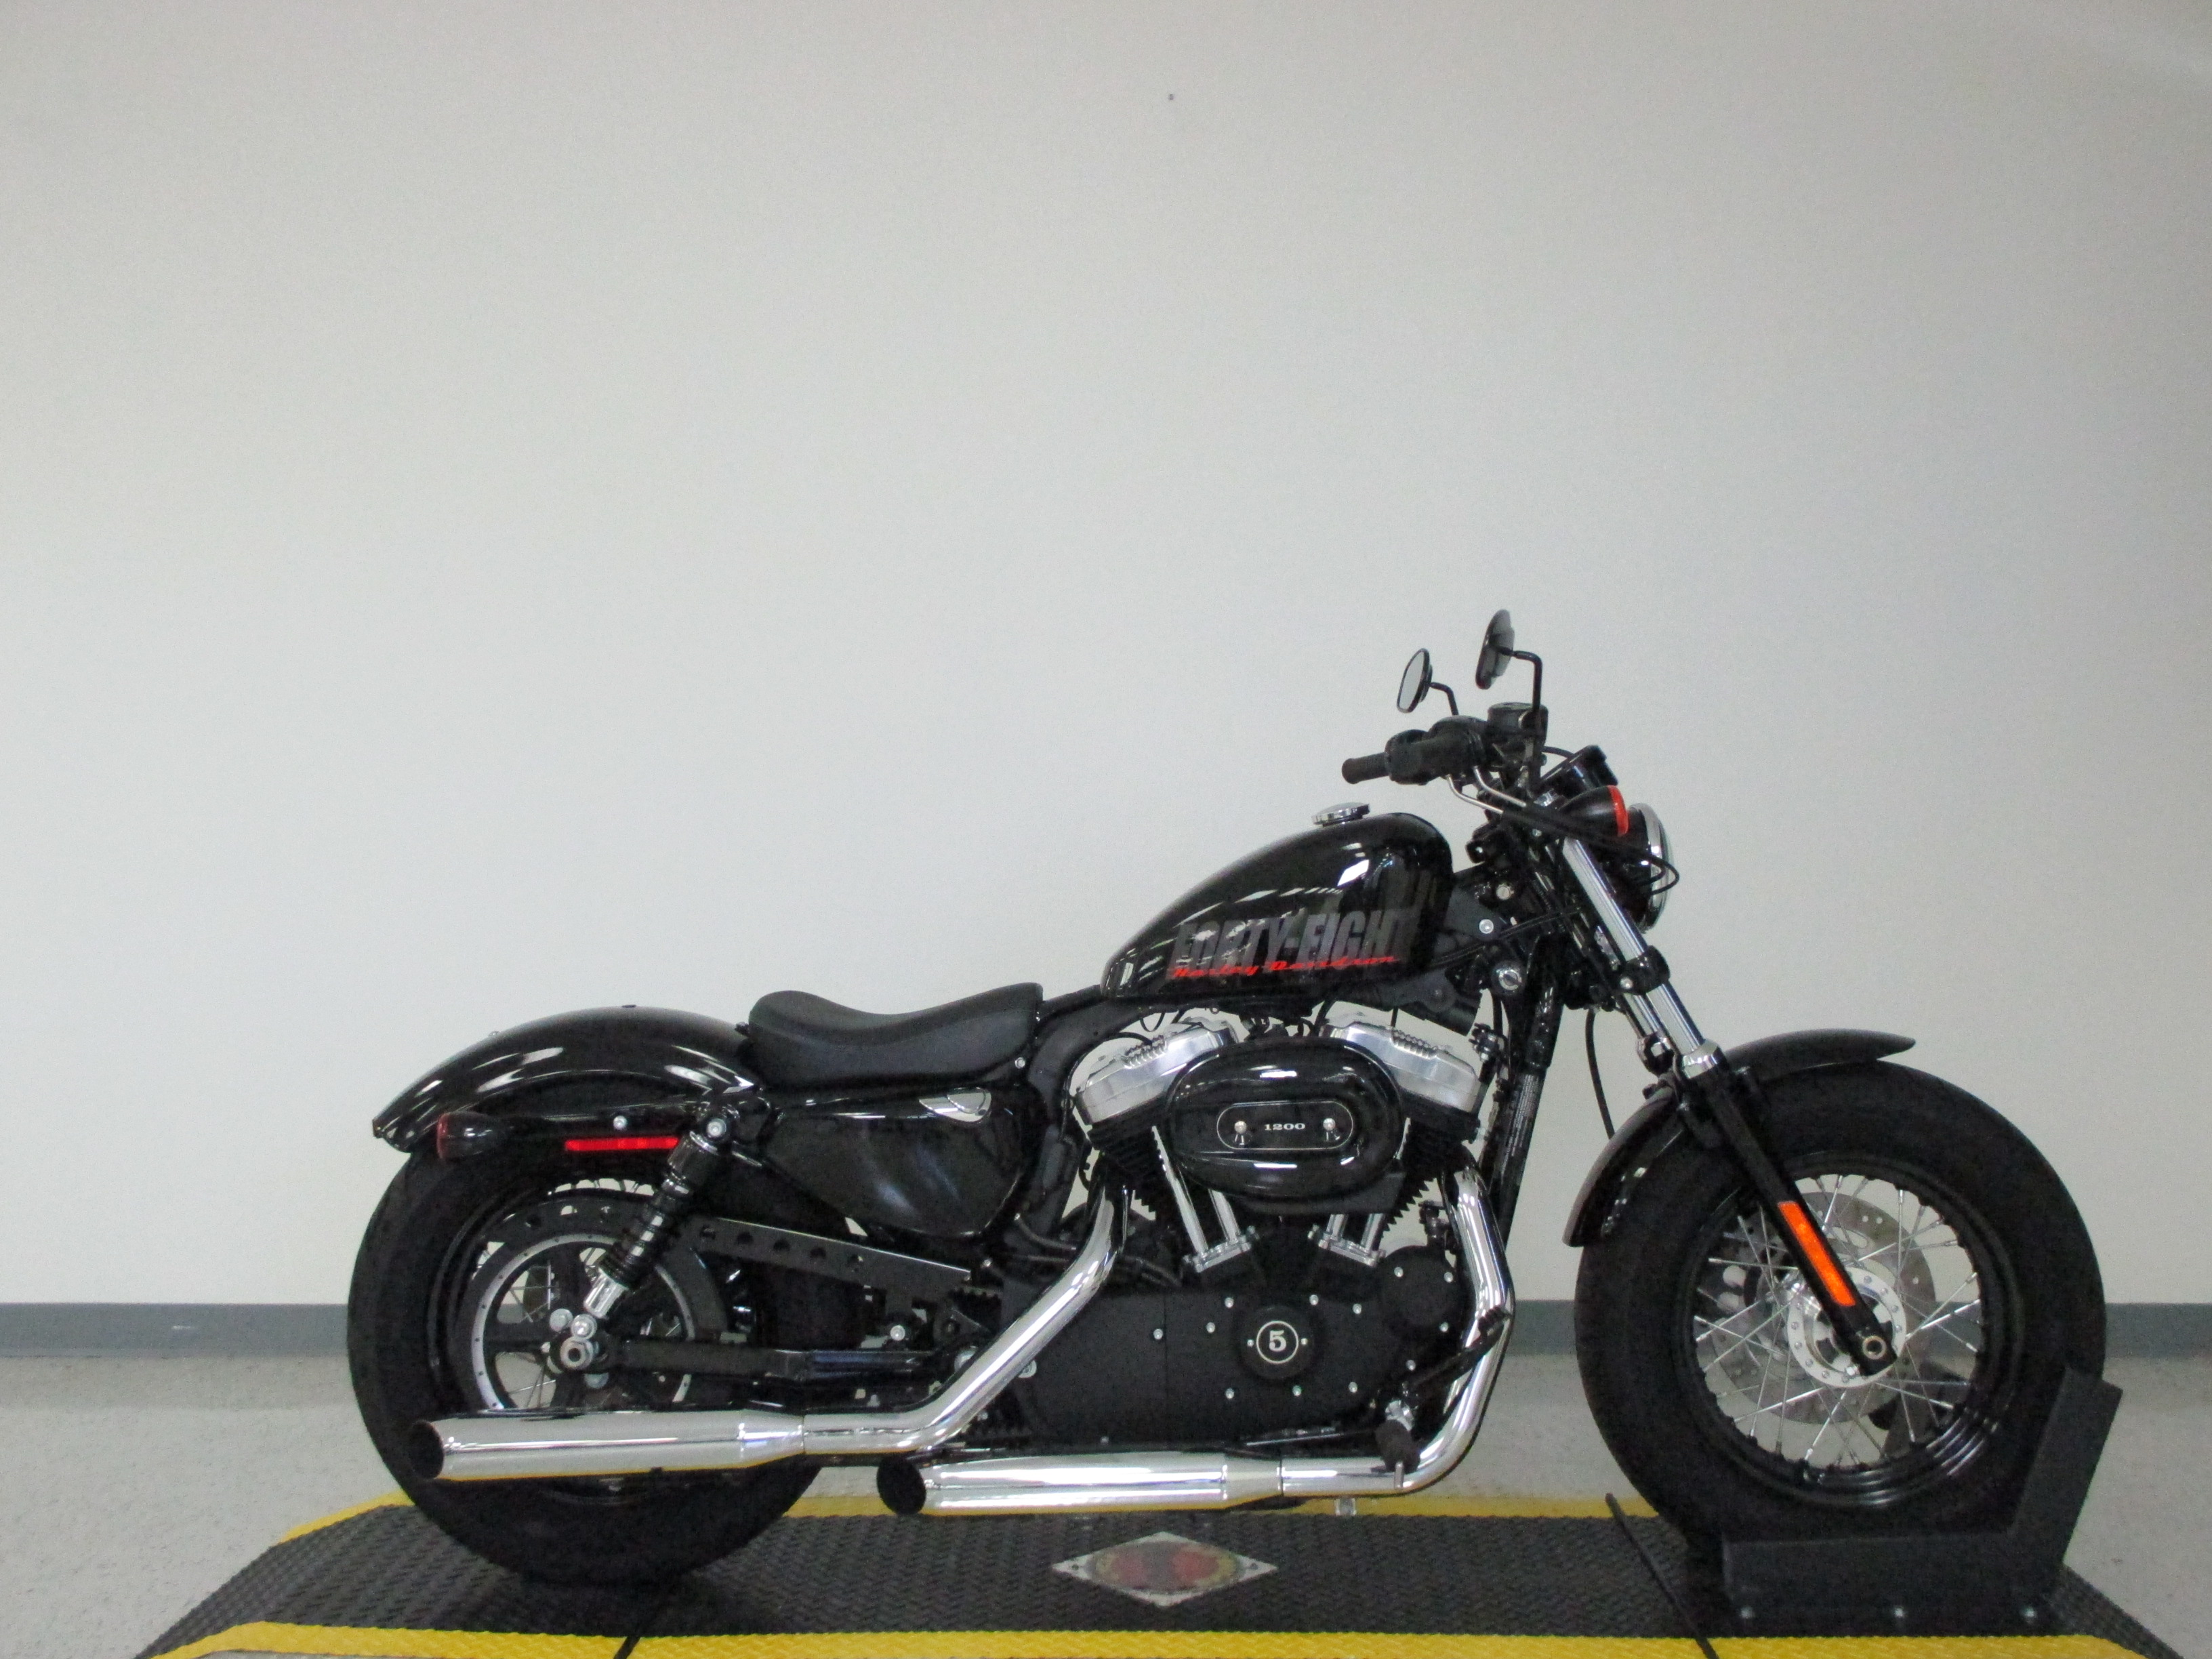 Harley-davidson 1200 custom